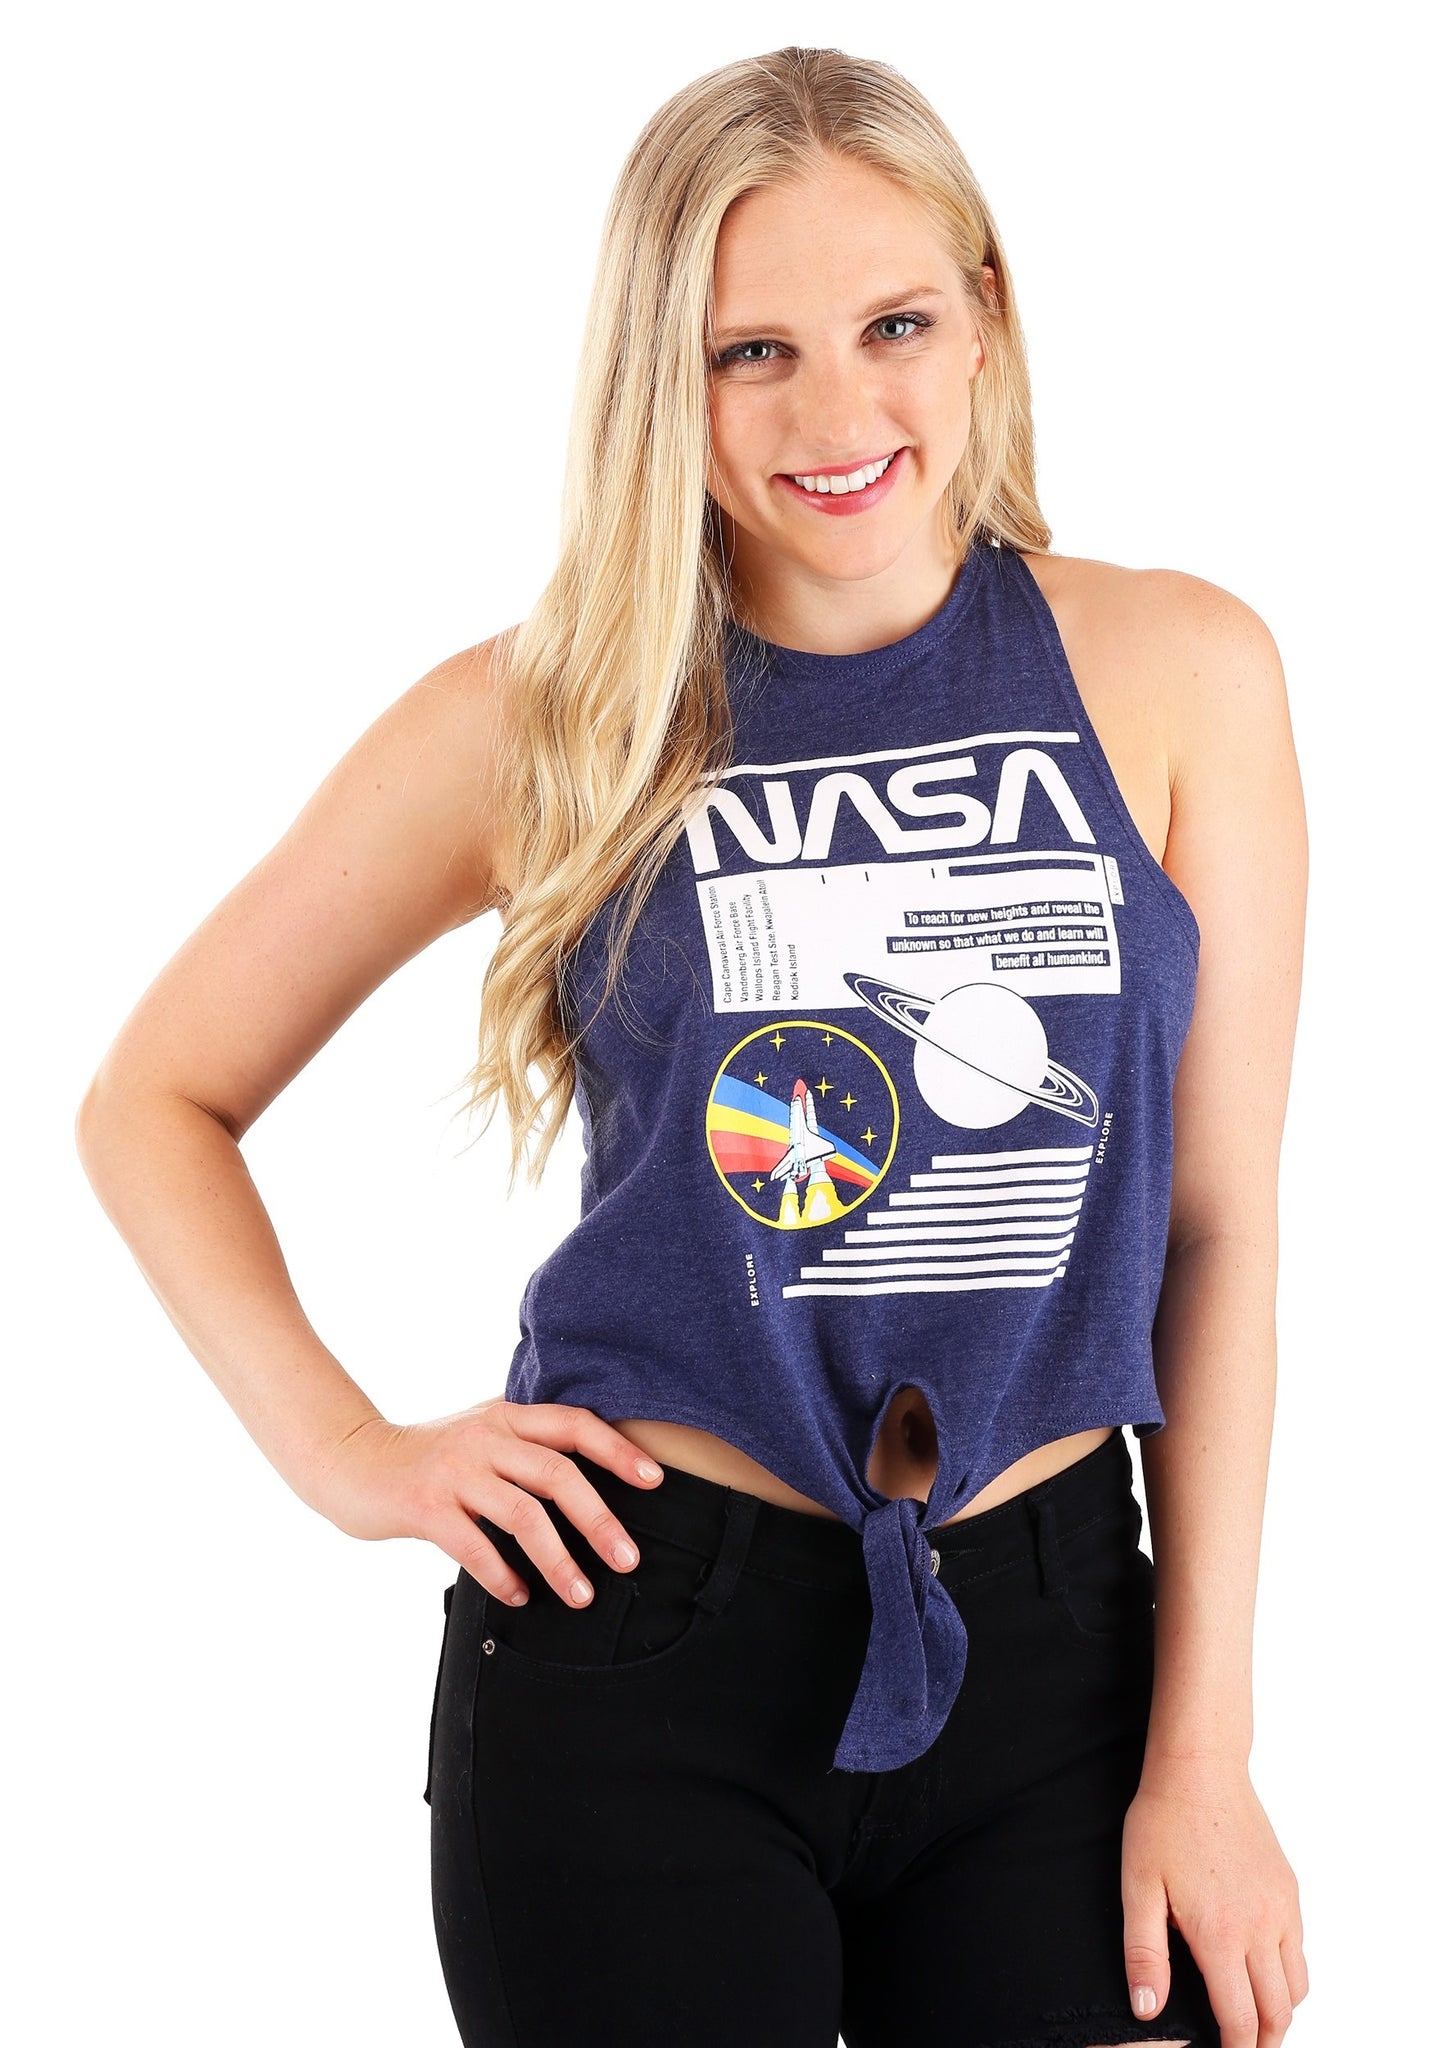 NASA Tie-Front Tank Top - Women's Space Shirt